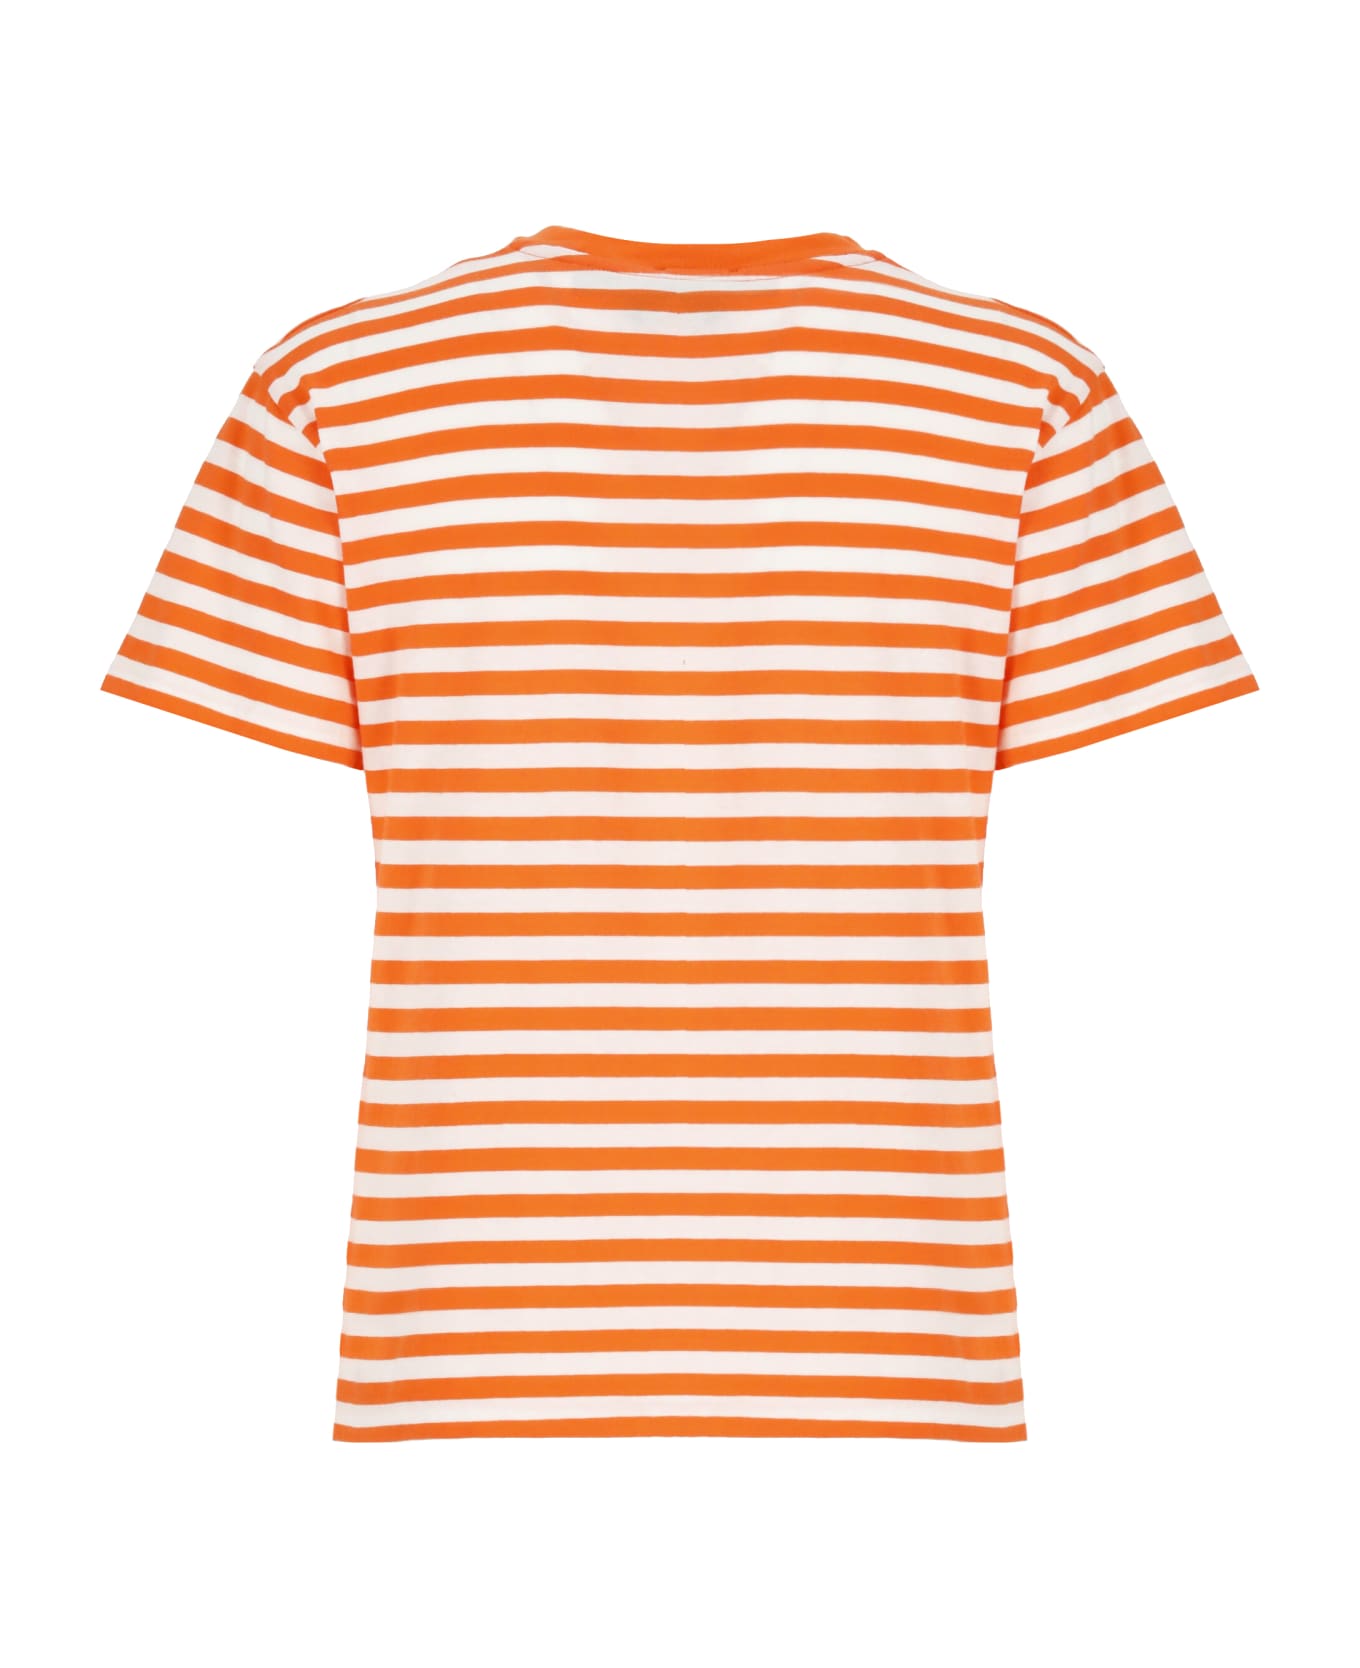 Ralph Lauren Pony T-shirt - Orange